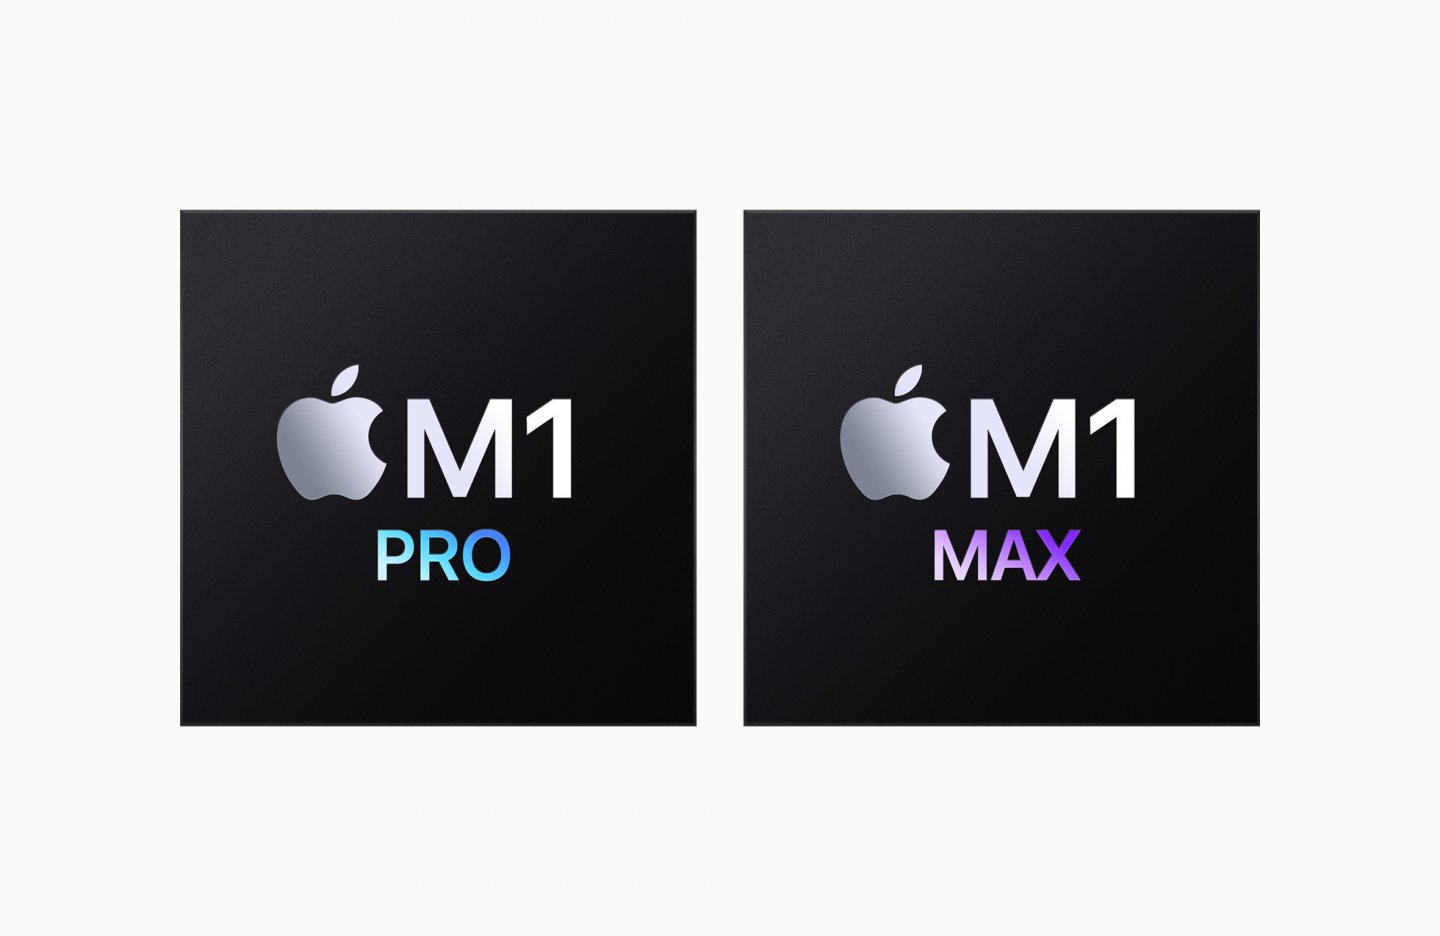 【2021 Apple 10月發表會】M1 Pro 與 M1 Max 登場，10核CPU、32核GPU、64GB RAM、ProRes 加速功能